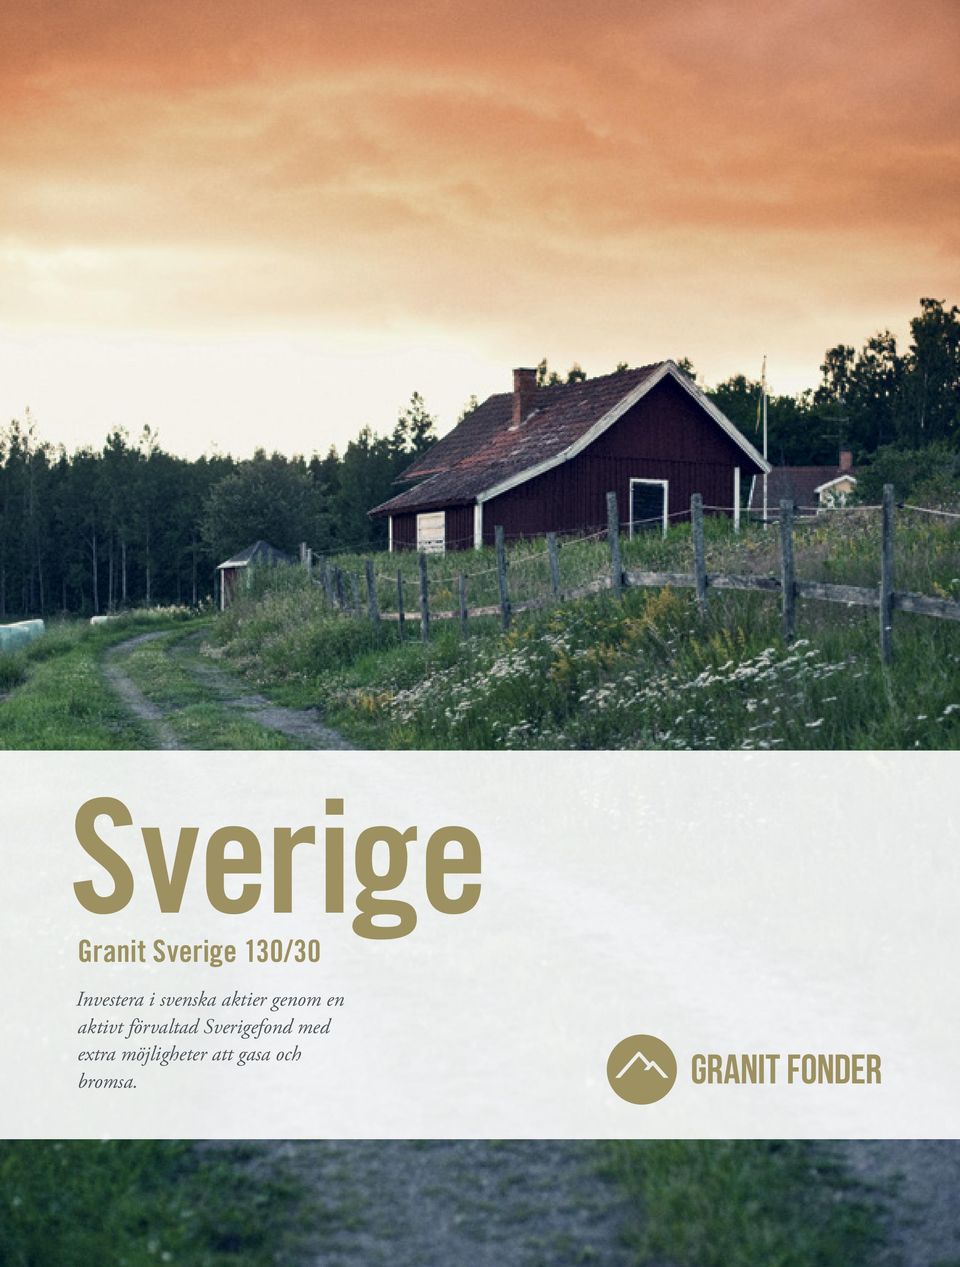 en aktivt förvaltad Sverigefond